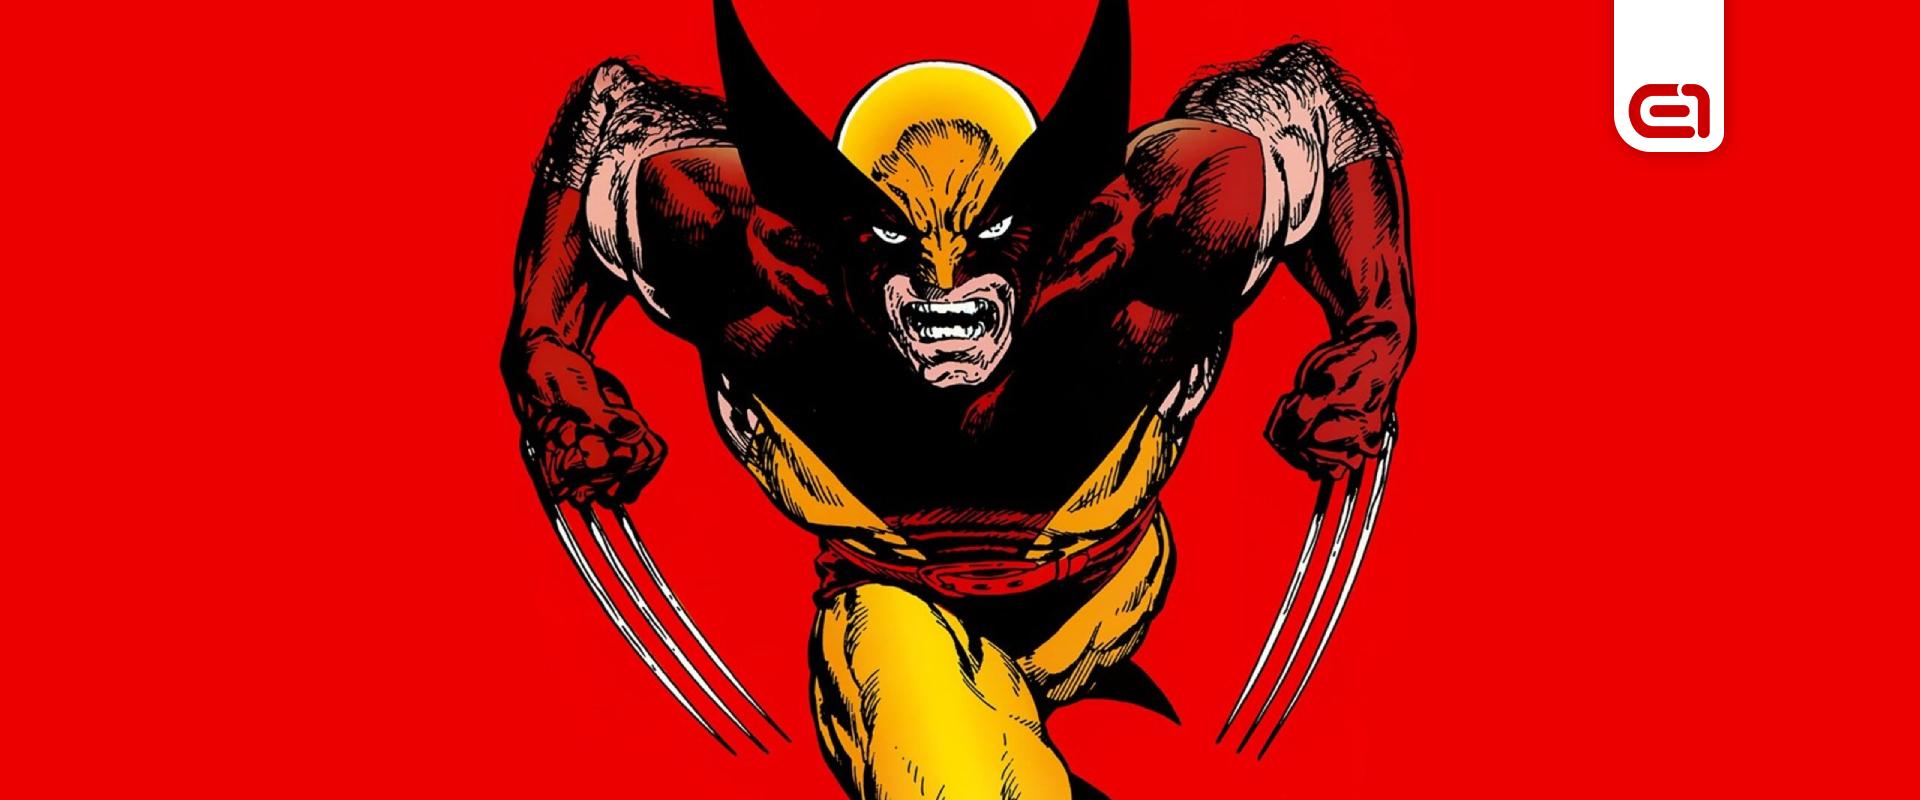 Végre kiderült mikor mutathatja meg magát a Sony Wolverine játéka!